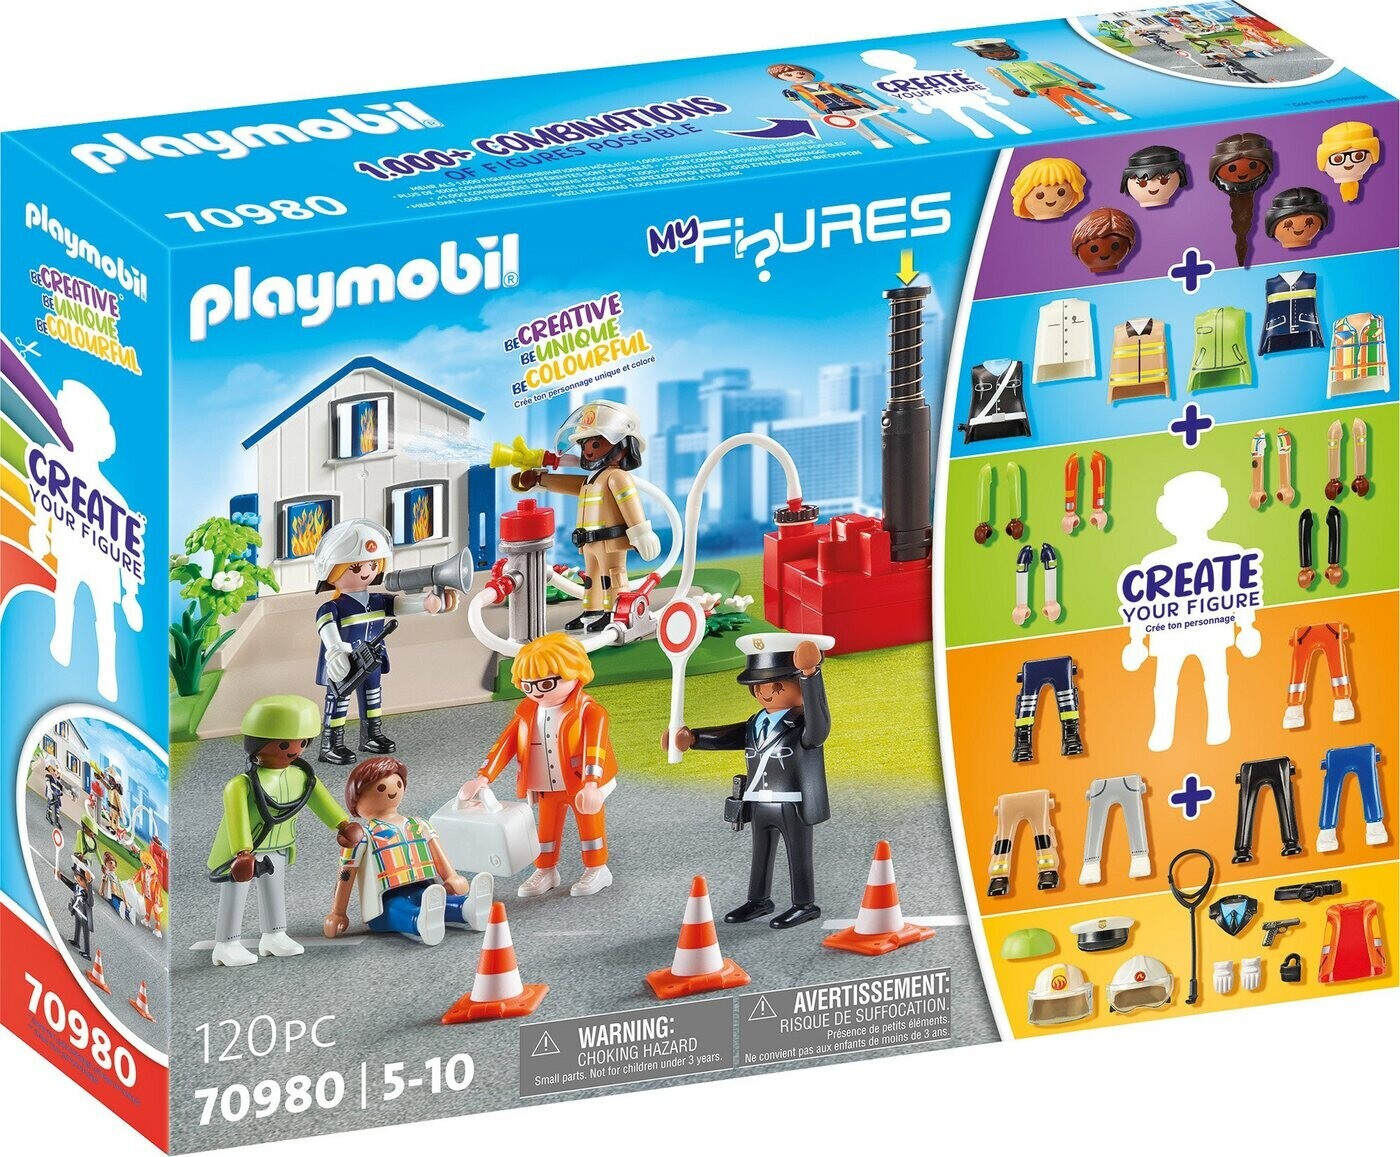 Playmobil City Life - La Pension des Animaux - Achat / Vente Playmobil City  Life - La Pension des Animaux pas cher - Cdiscount